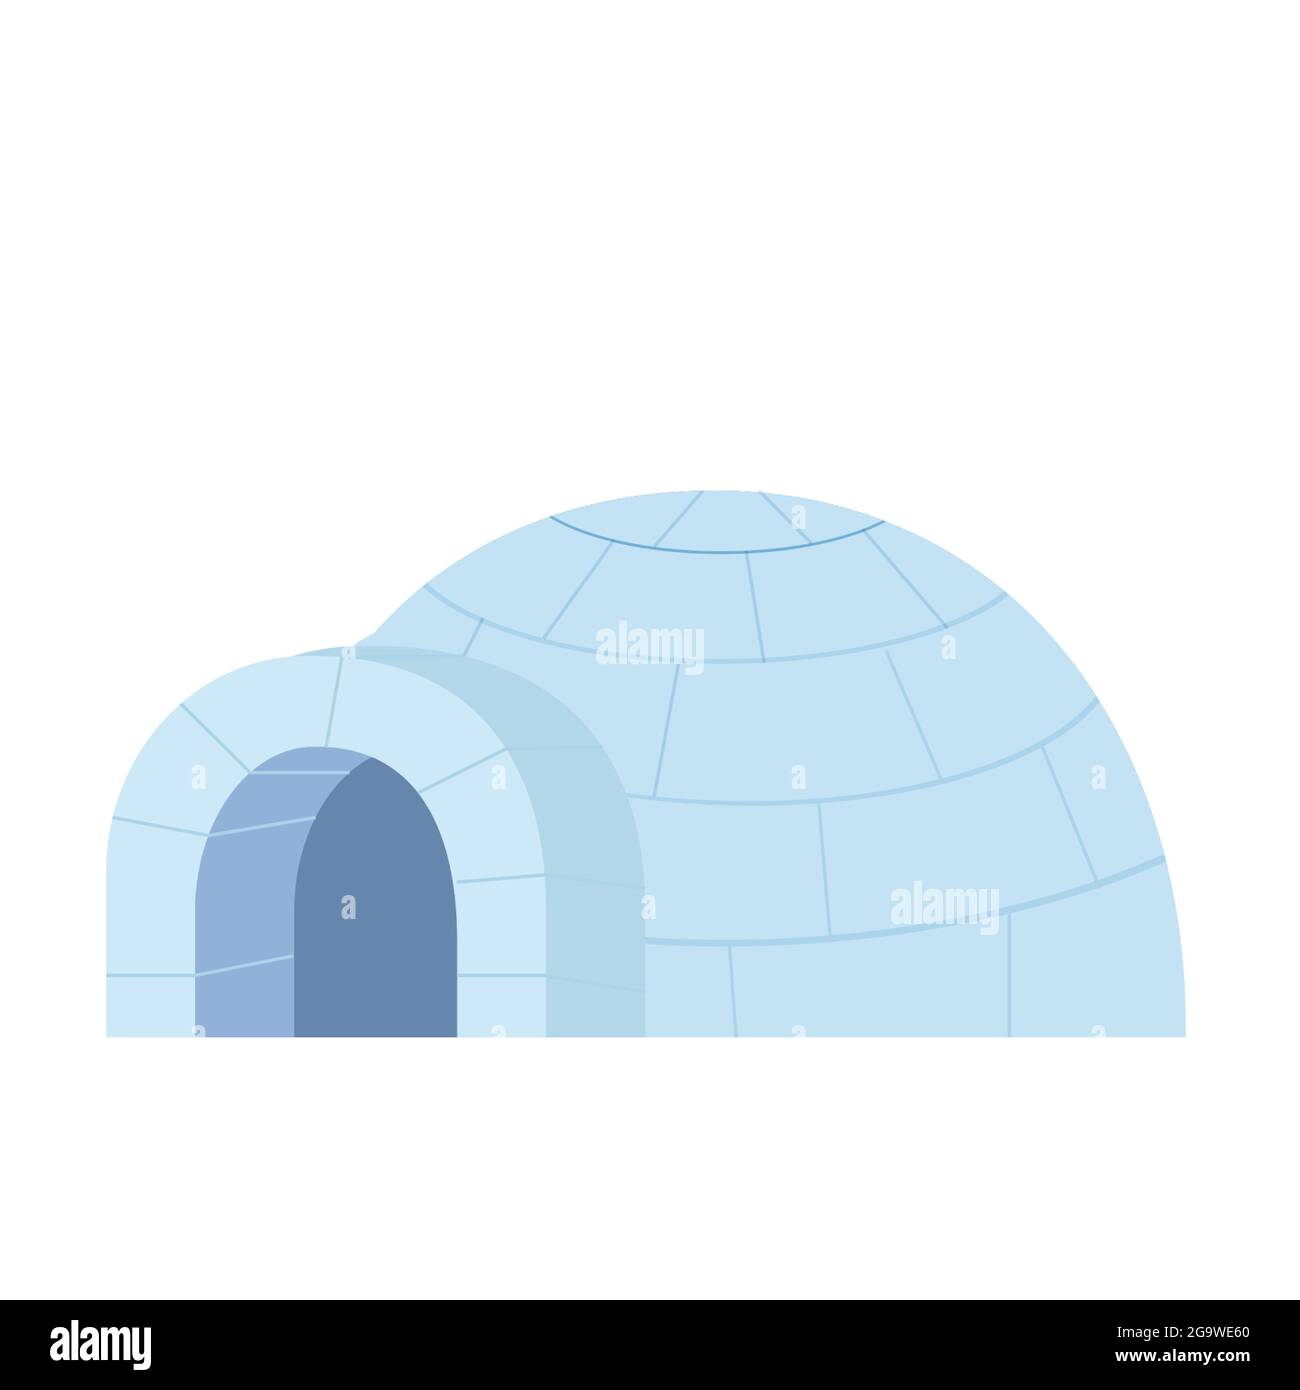 Igloo traditionnel de neige de style dessin animé isolé sur fond blanc. Icehouse Outdoor, culture esquimau, maison anarctique. Illustration vectorielle Illustration de Vecteur